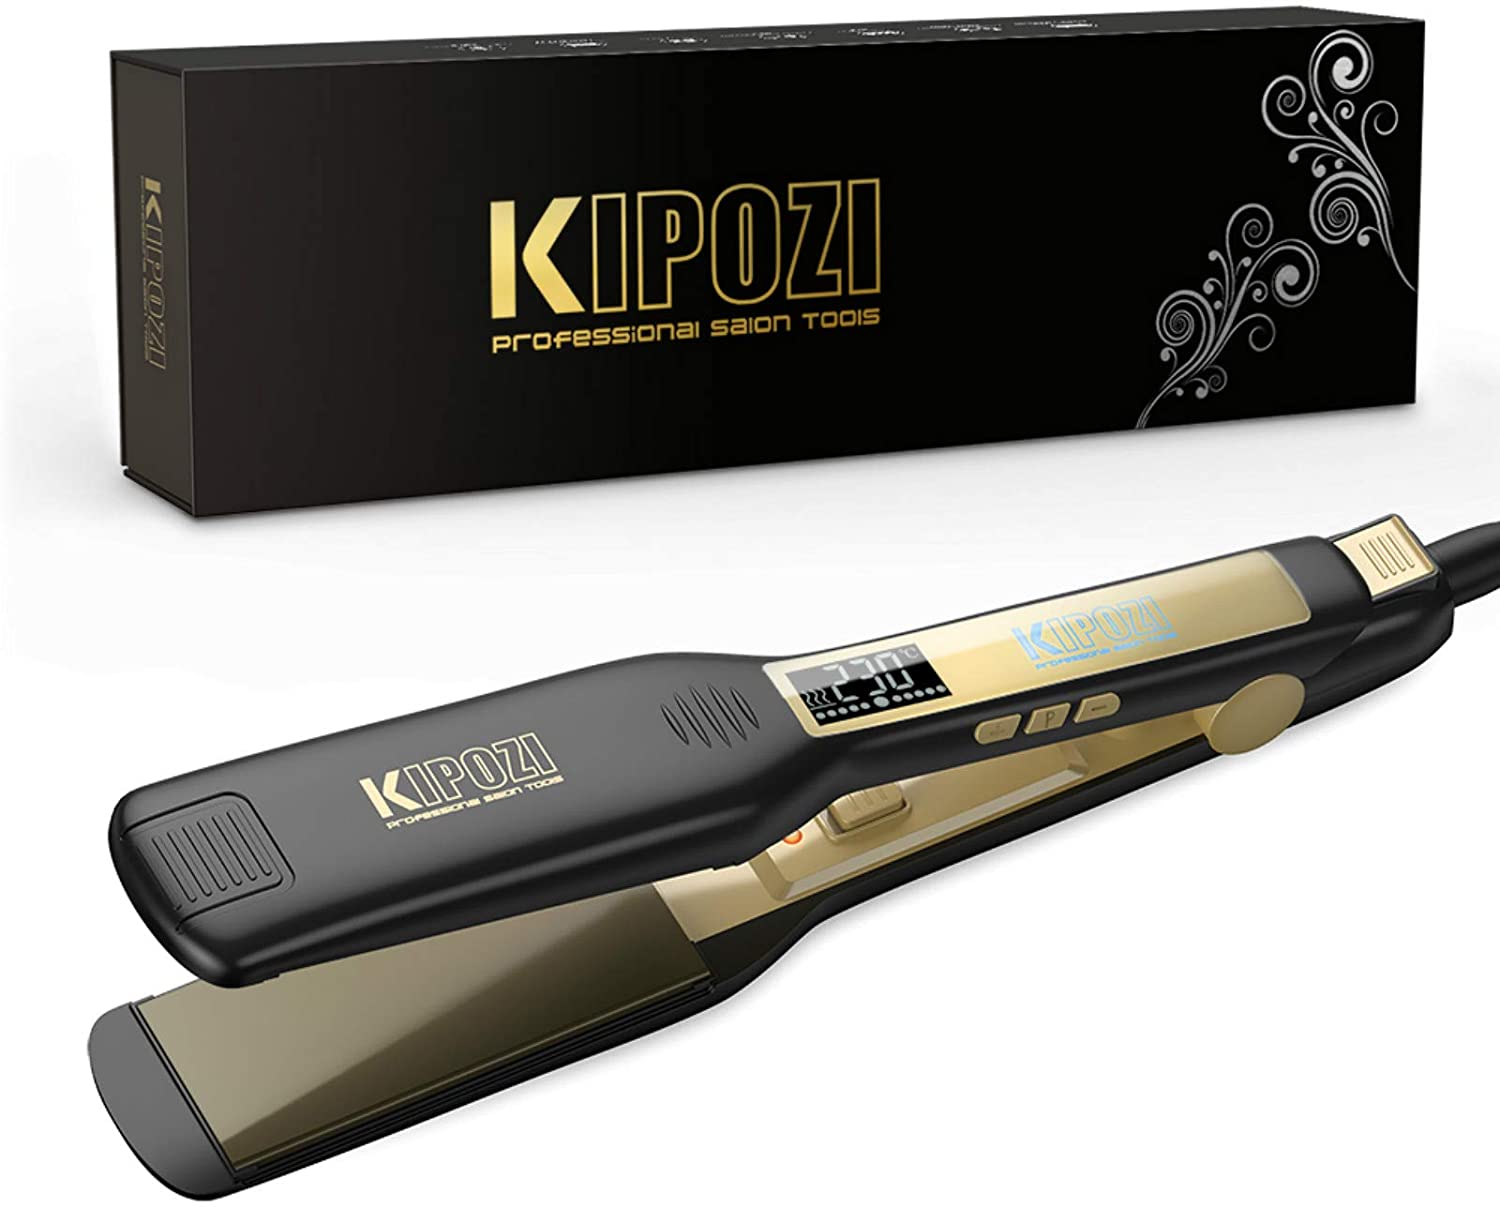 Bild zu KIPOZI Profi Haarglätter mit Ionen Technologie für 18,92€